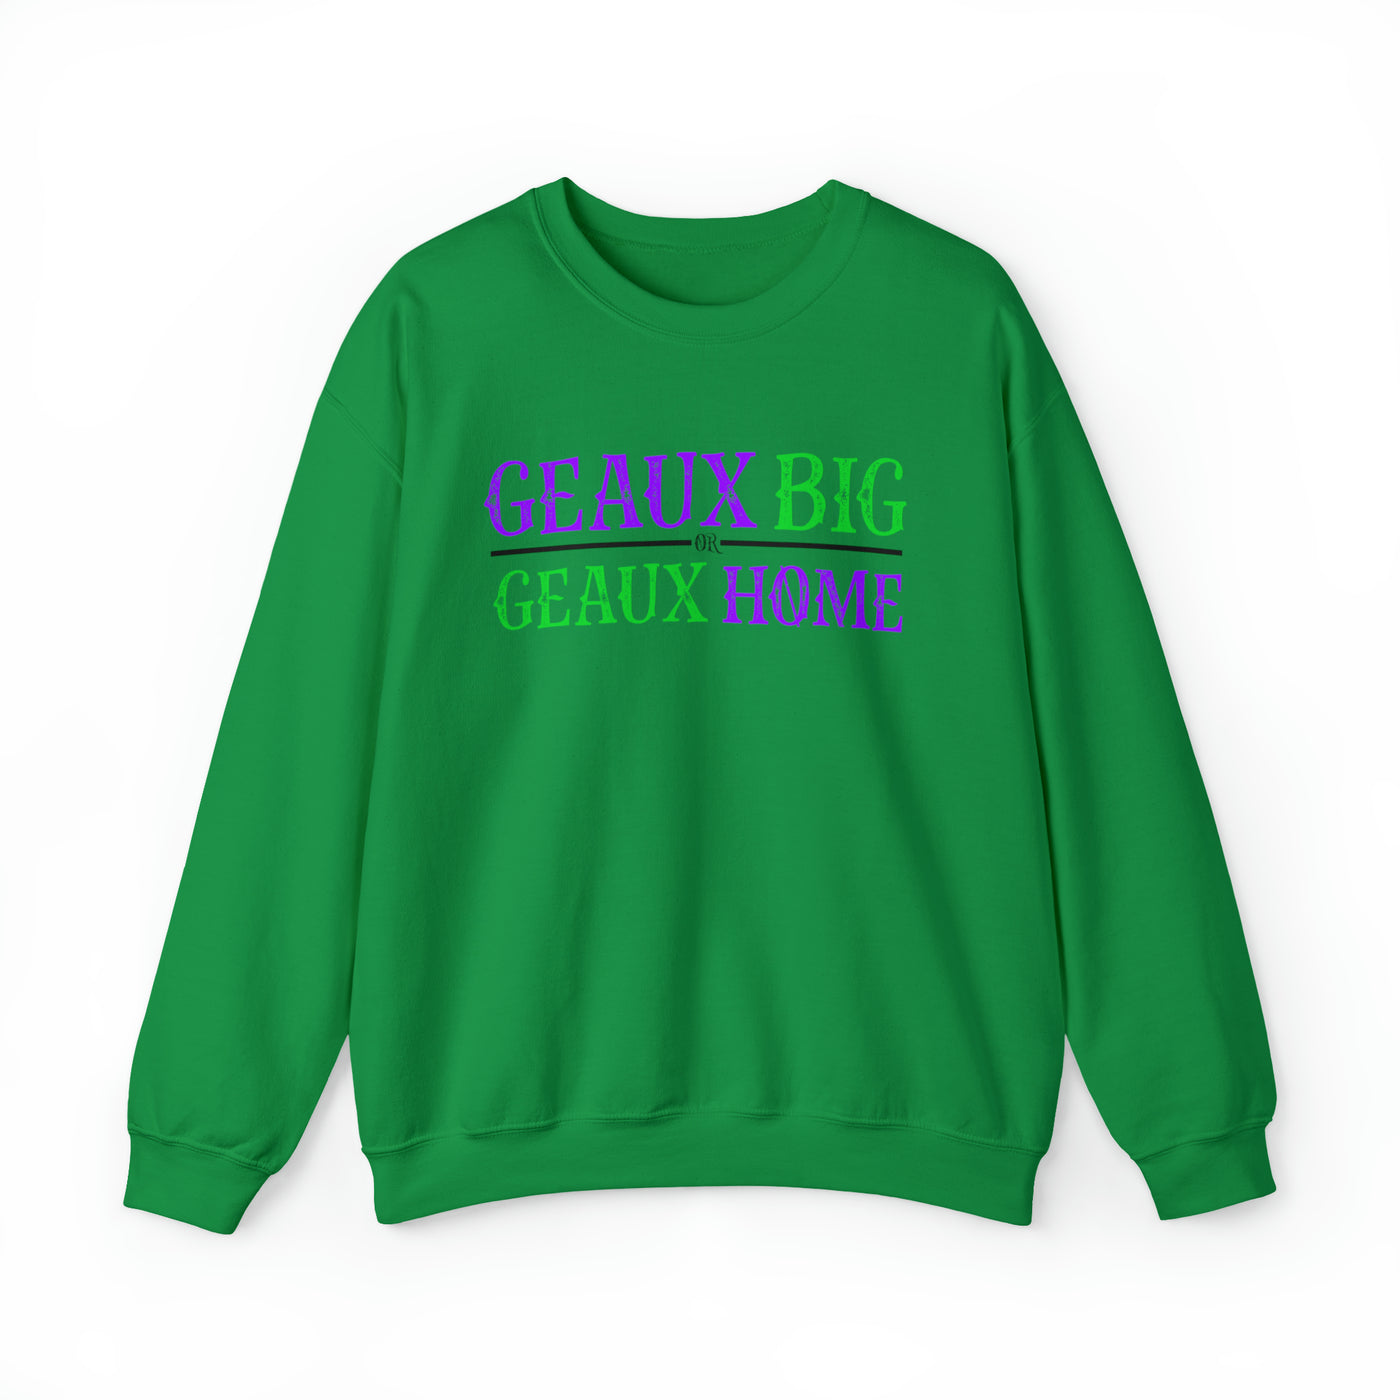 Geaux Big Crewneck Sweatshirt